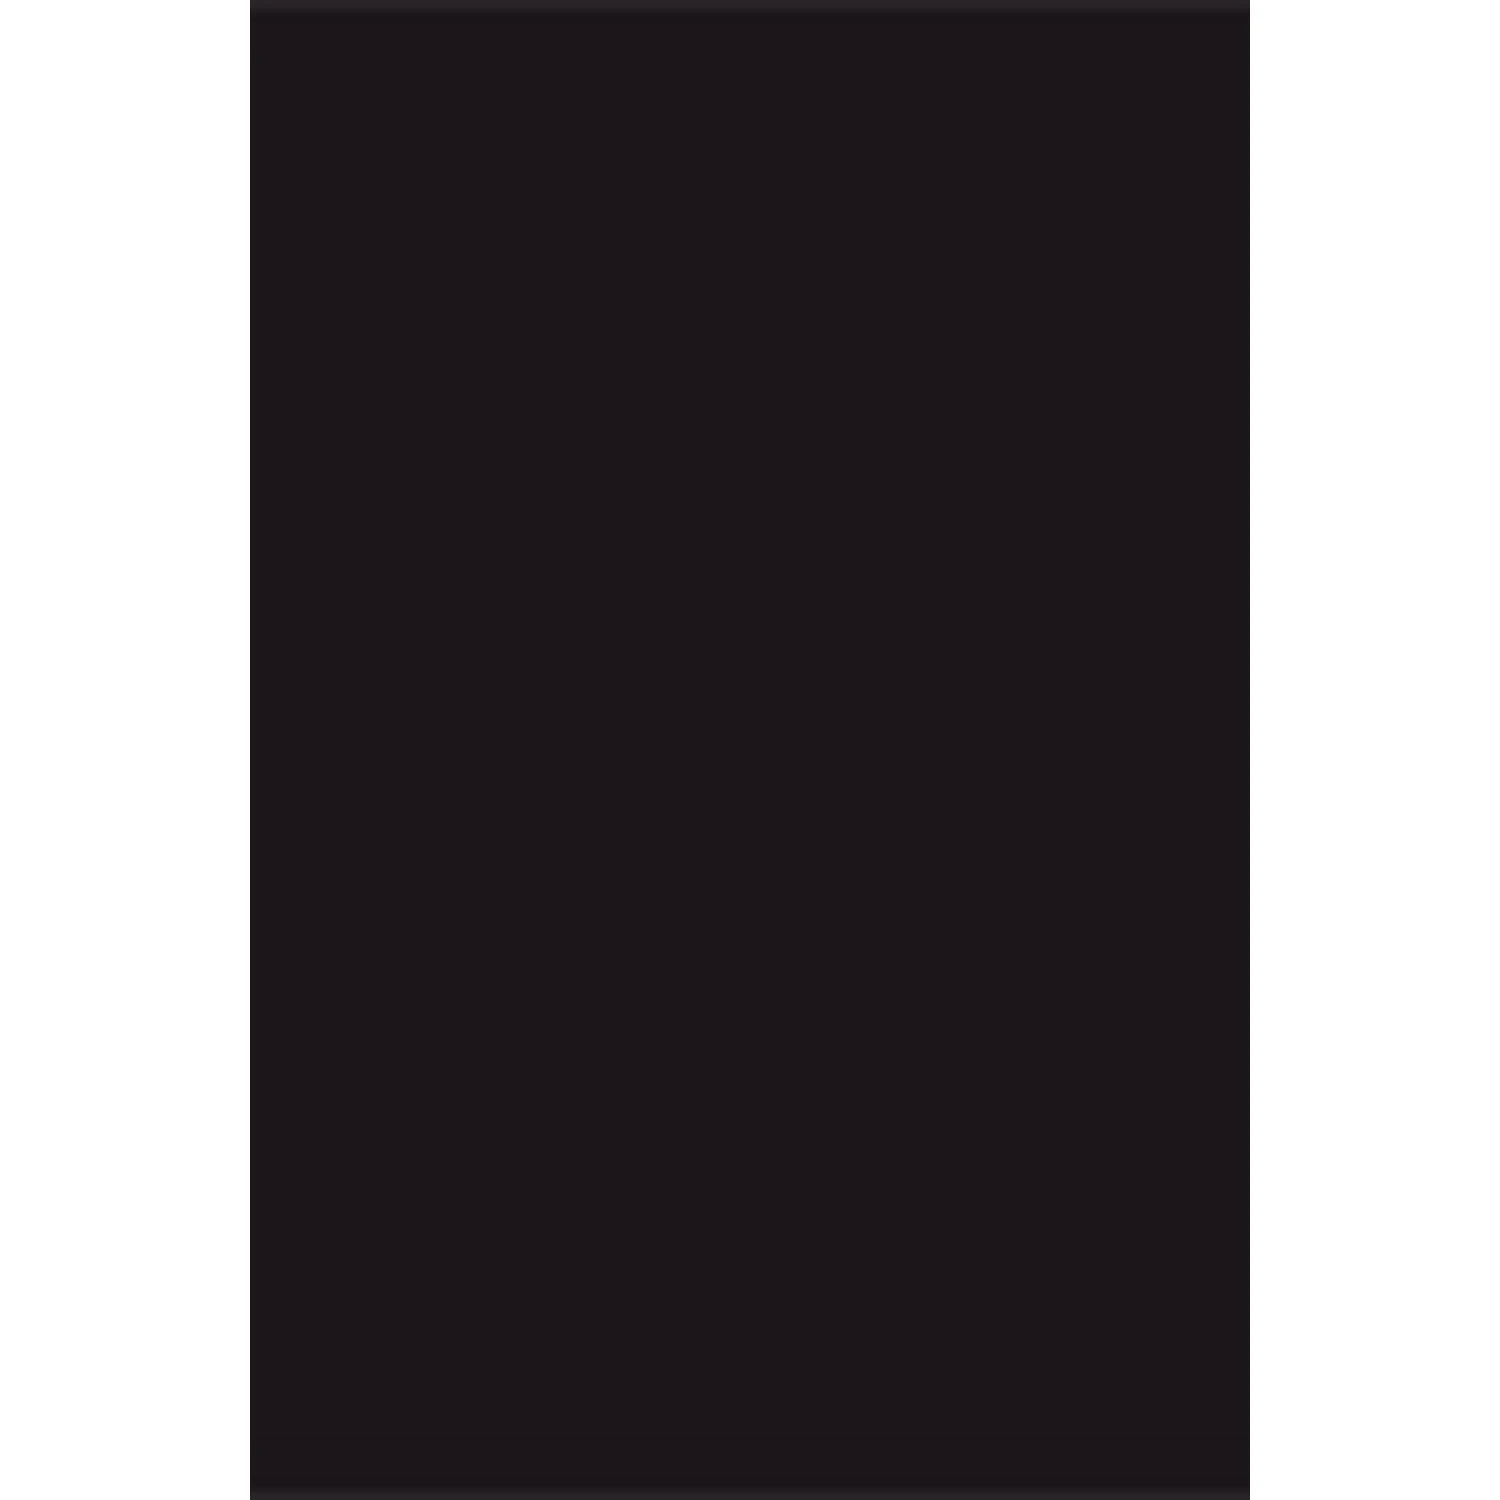 【特惠8.4折】包邮包税【预售7天发货】 CARHARTT WIP 男士 卫衣 American Script 连帽衫  I028279/89XX CAH7DE2EBCK 商品